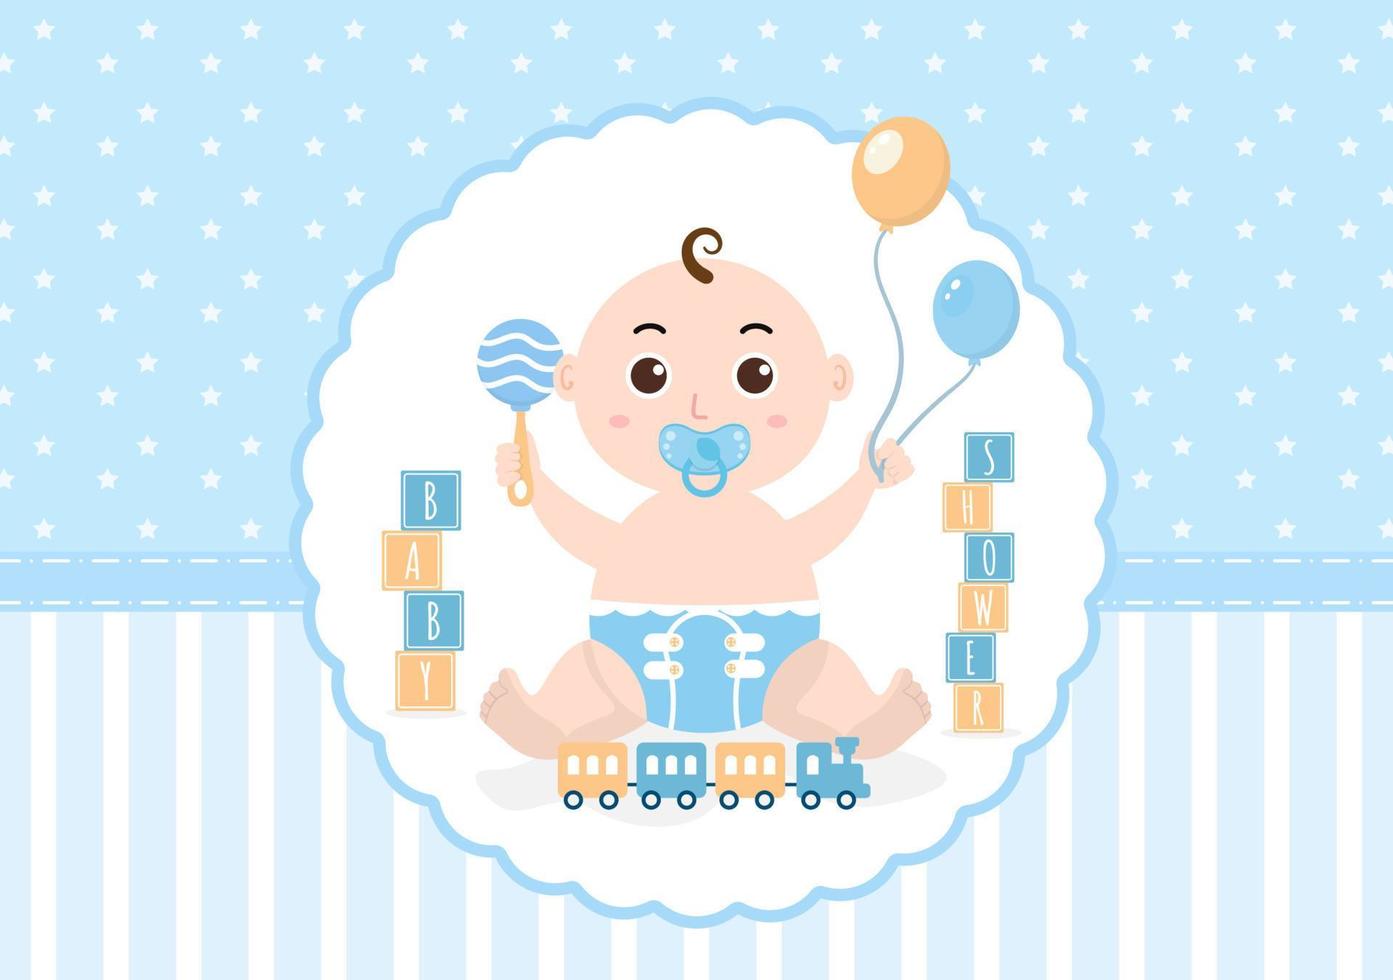 babydusche kleiner junge oder mädchen mit niedlichem design spielzeug und zubehör neugeborene babys hintergrundillustration für einladungs- und grußkarten vektor